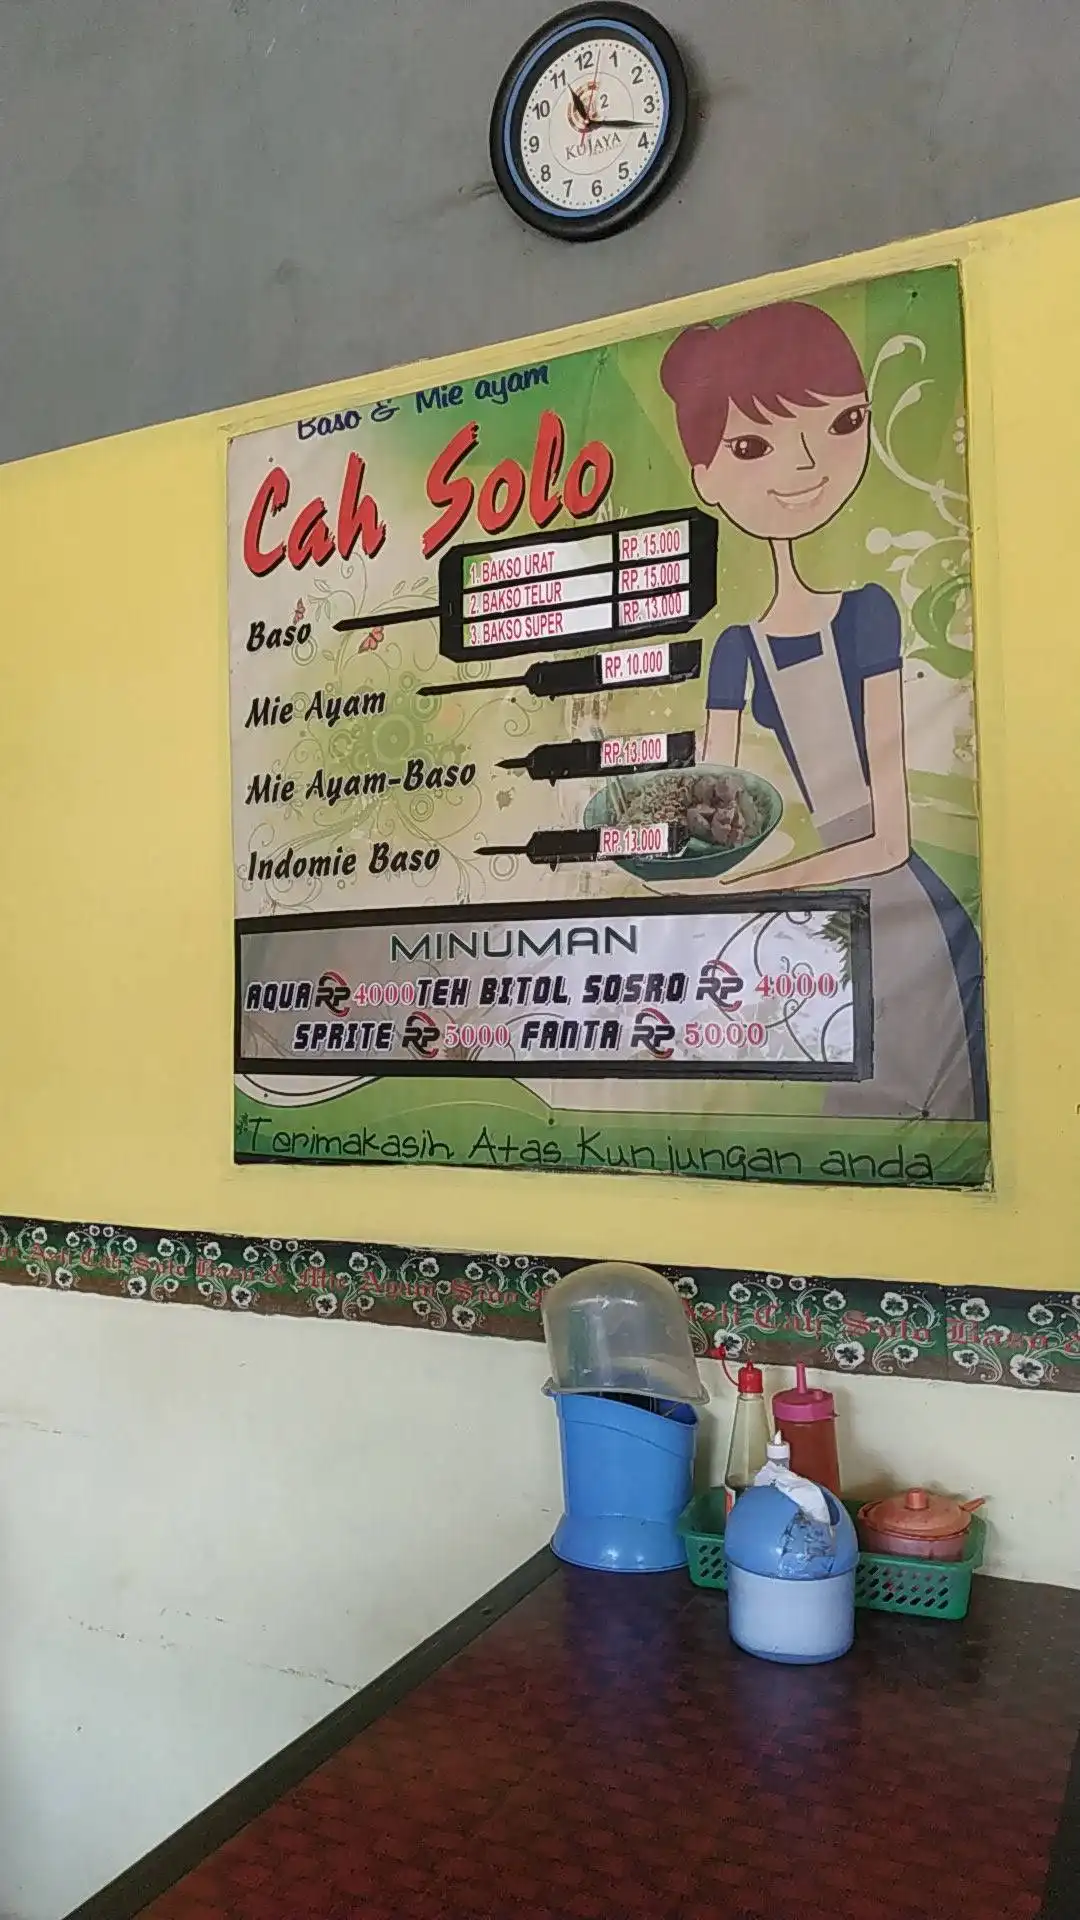 Bakso Cagak Cah Solo